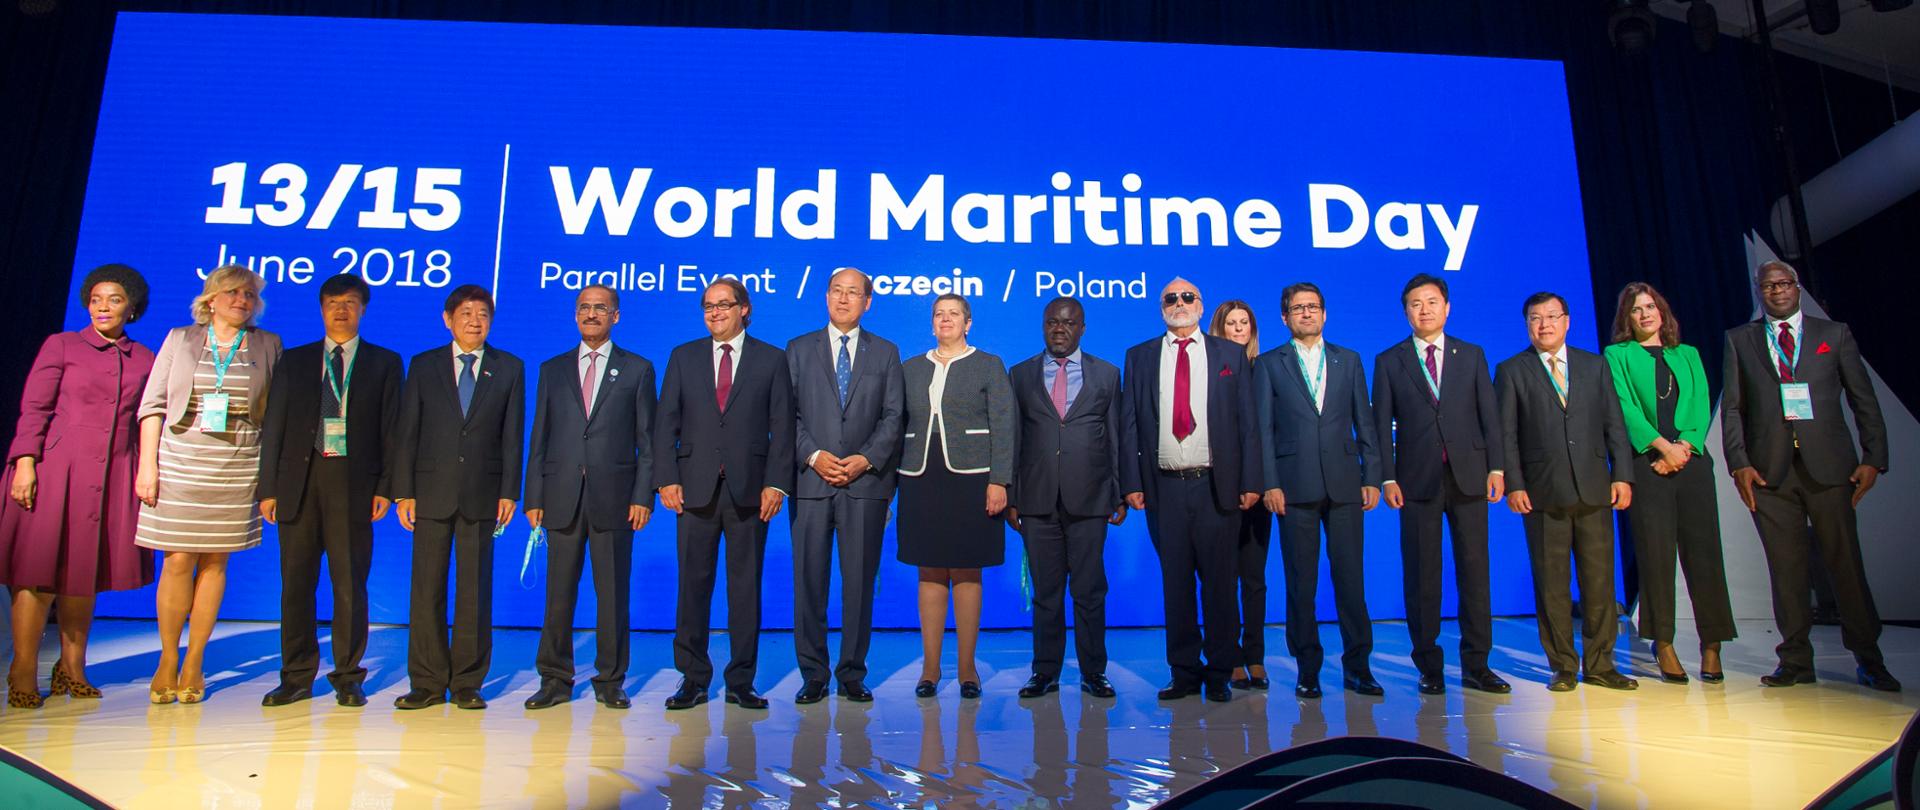 16 najważniejszych uczestników Światowych Dni Morza pozuje do zdjęcia. Wśród nich minister Marek Gróbarczyk